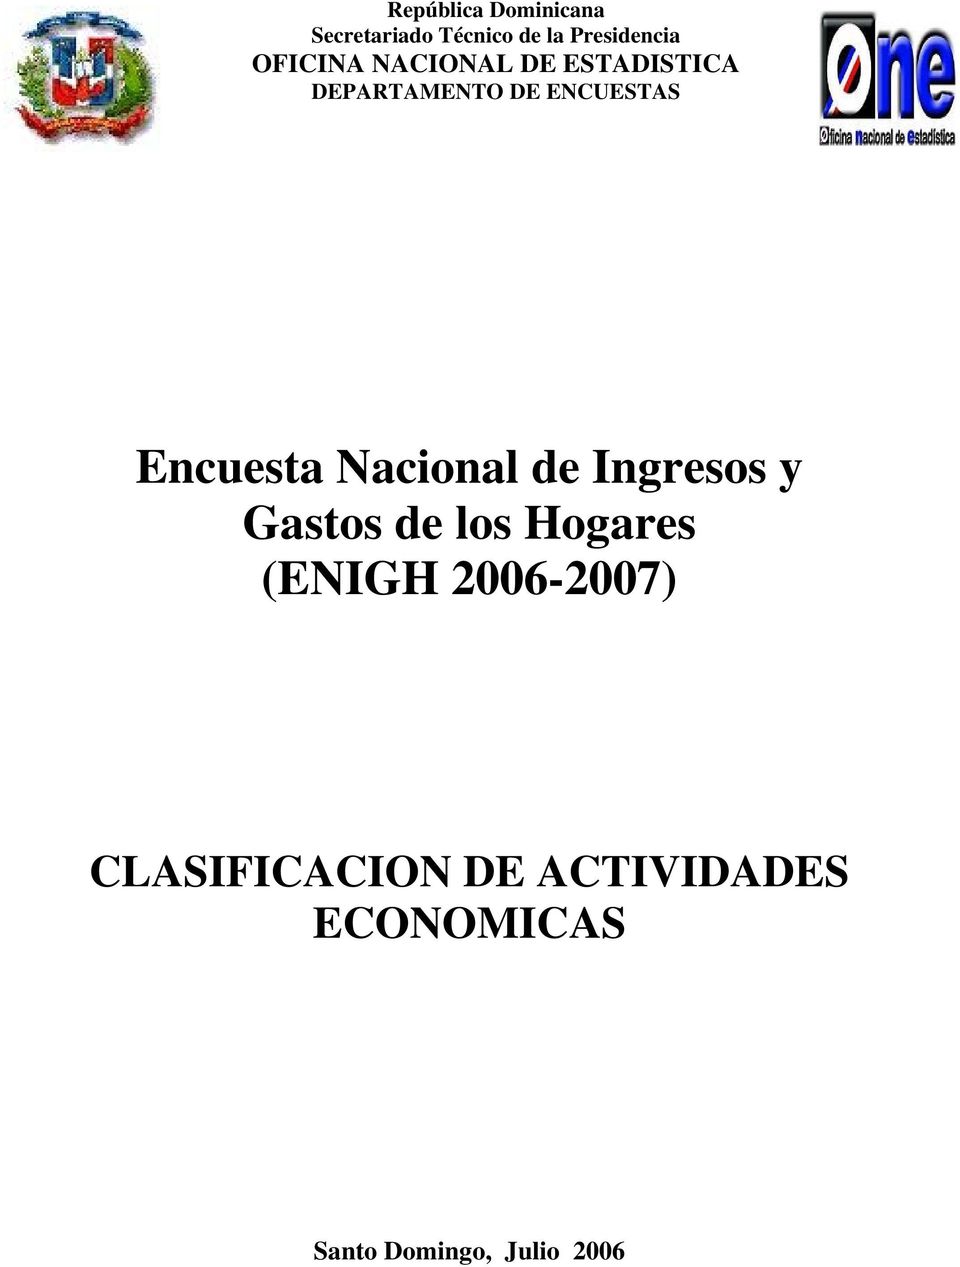 Encuesta Nacional de Ingresos y Gastos de los Hogares (ENIGH